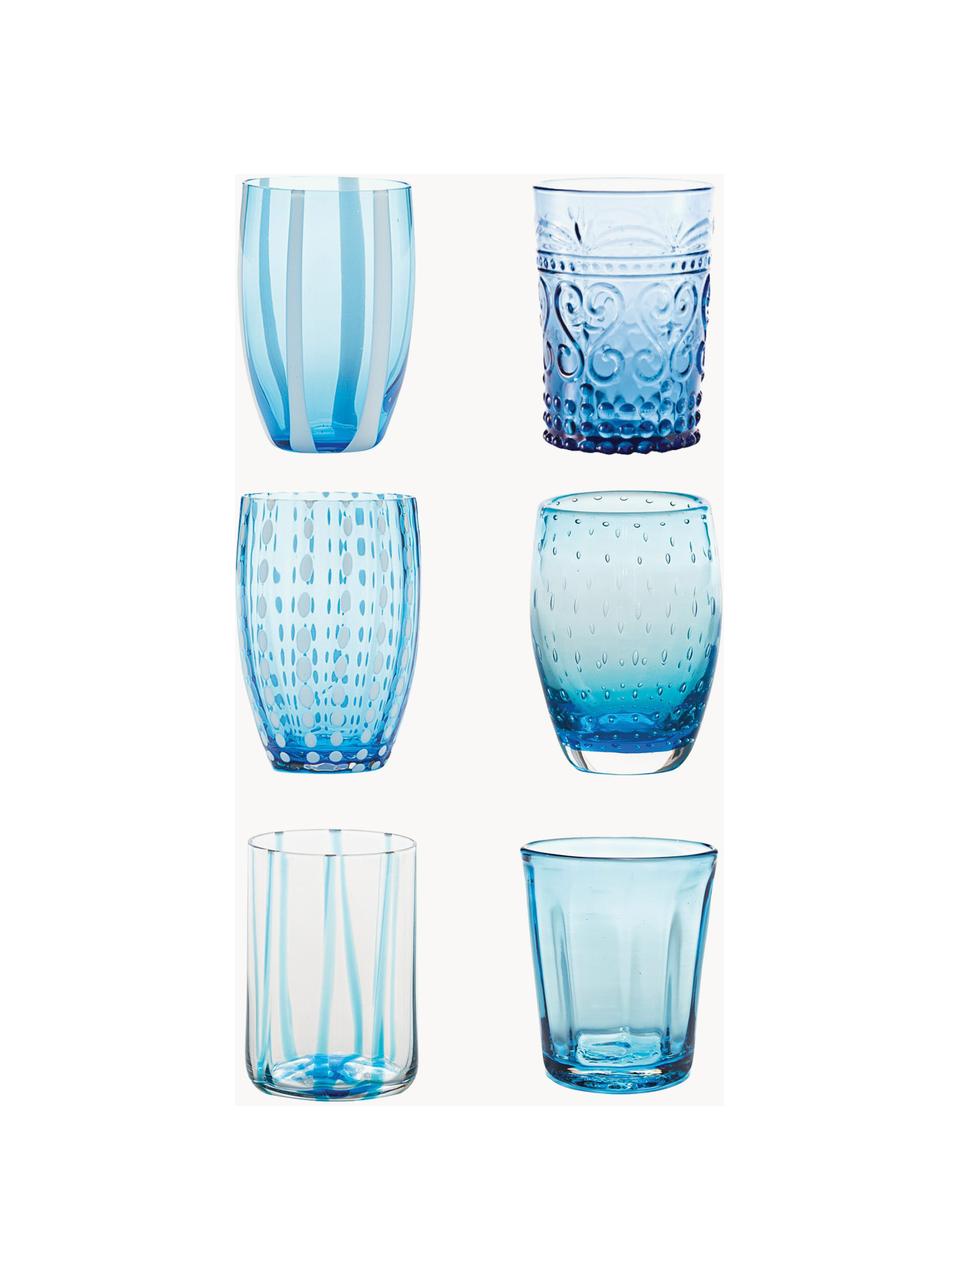 Handgefertigte Wassergläser Melting, 6er-Set, Glas, Hellblau, transparent, Set mit verschiedenen Größen